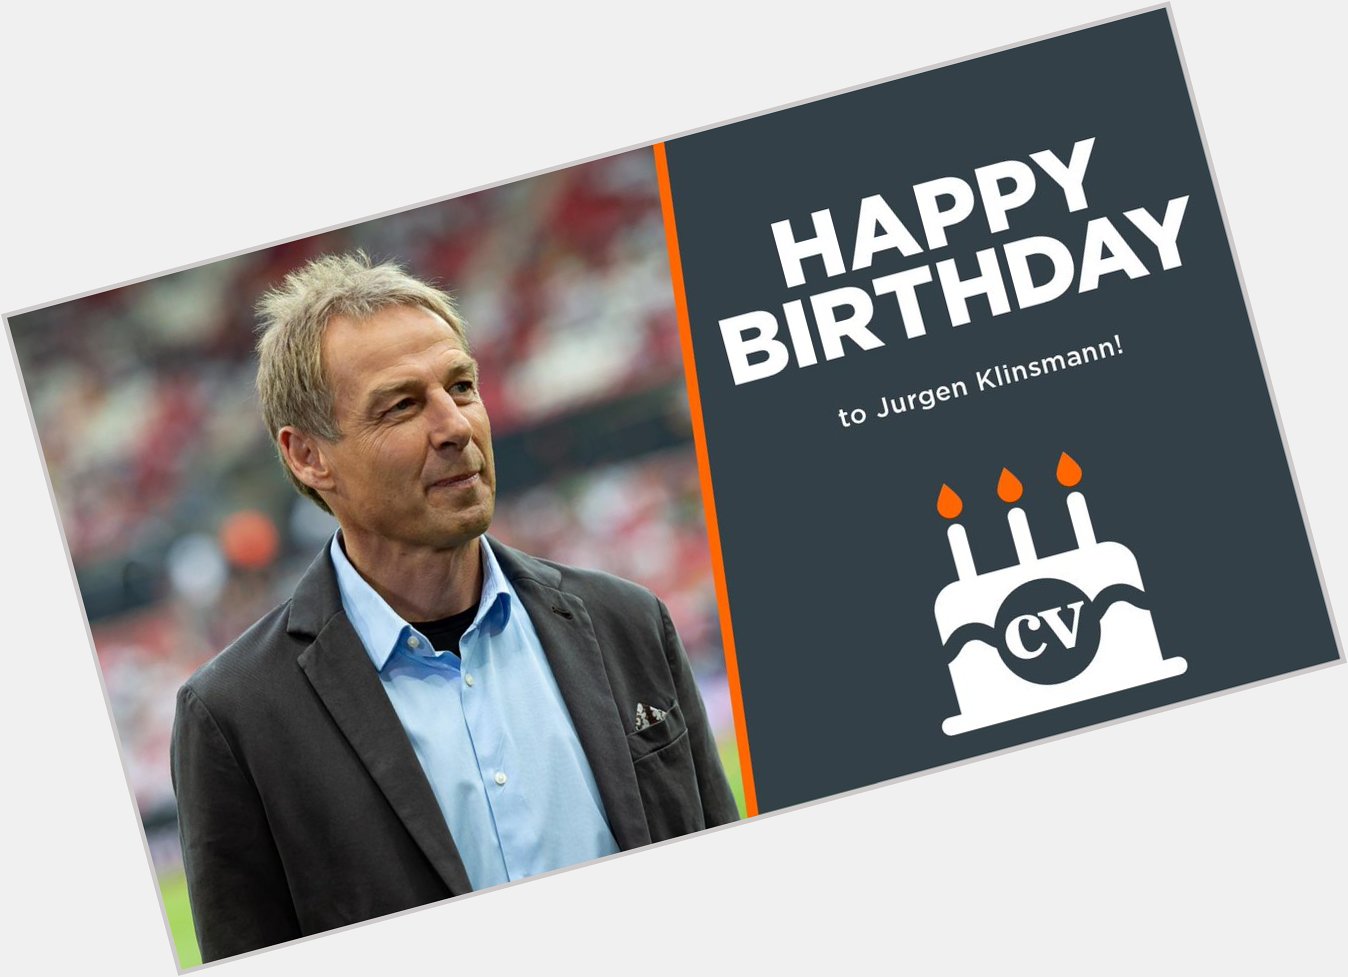  Happy birthday to Jurgen Klinsmann!  